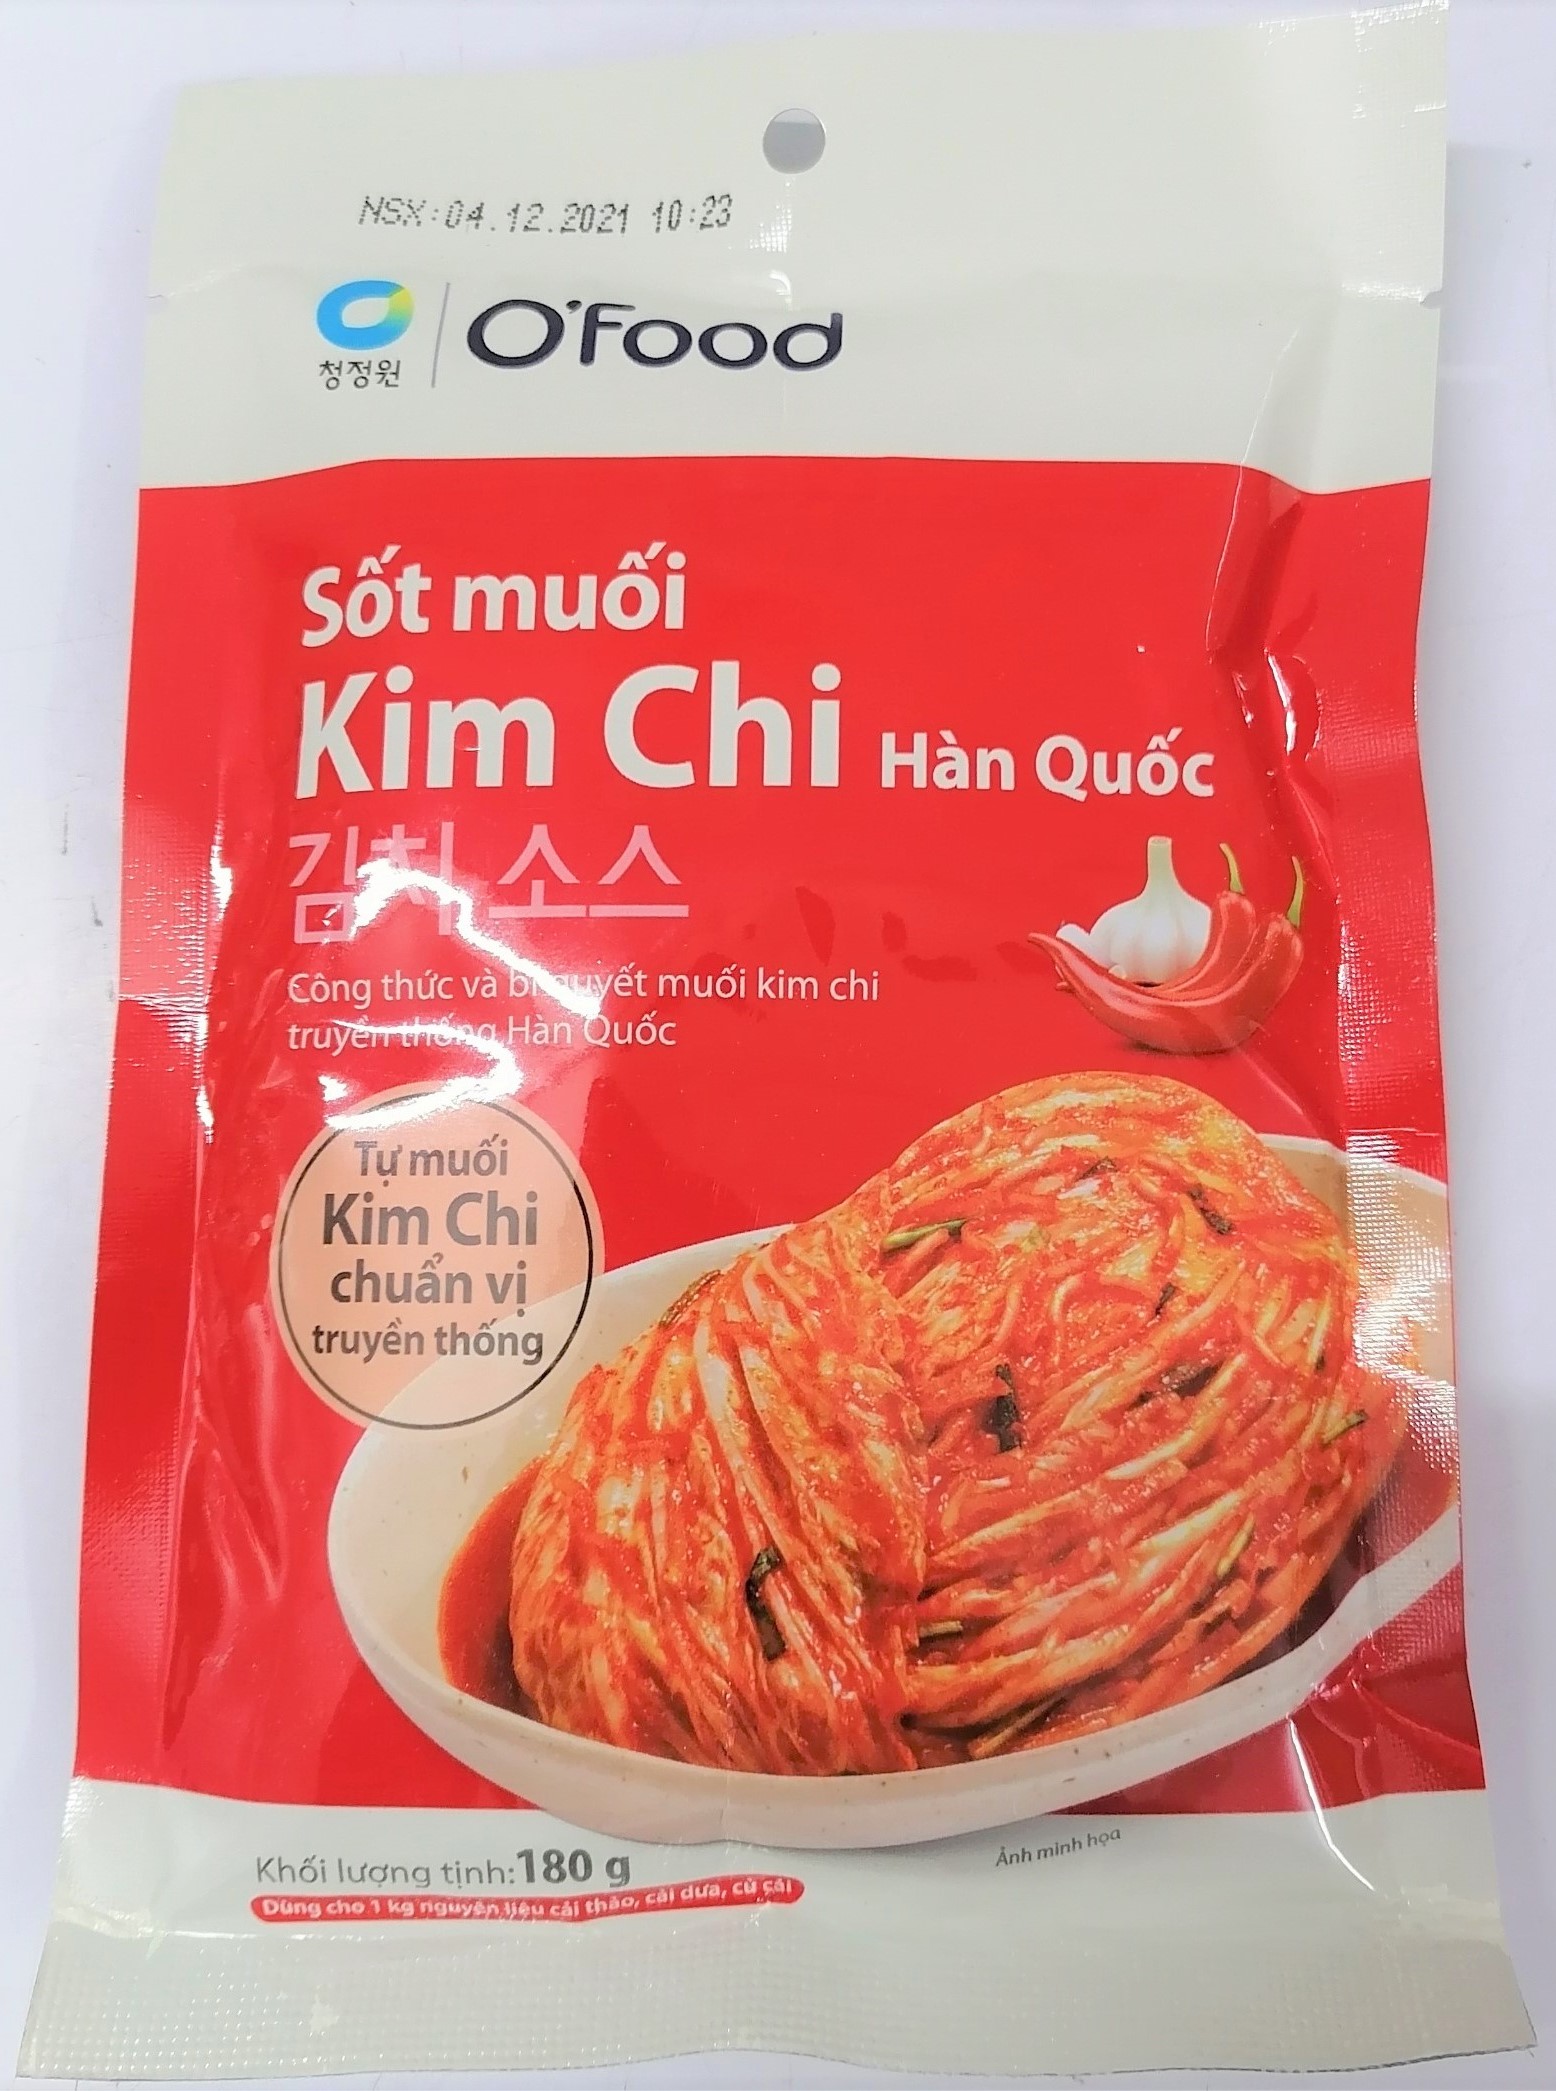 gói 180g SỐT MUỐI KIM CHI KIỂU HÀN QUỐC Ofood MIWON Kim Chi Pickle Sauce